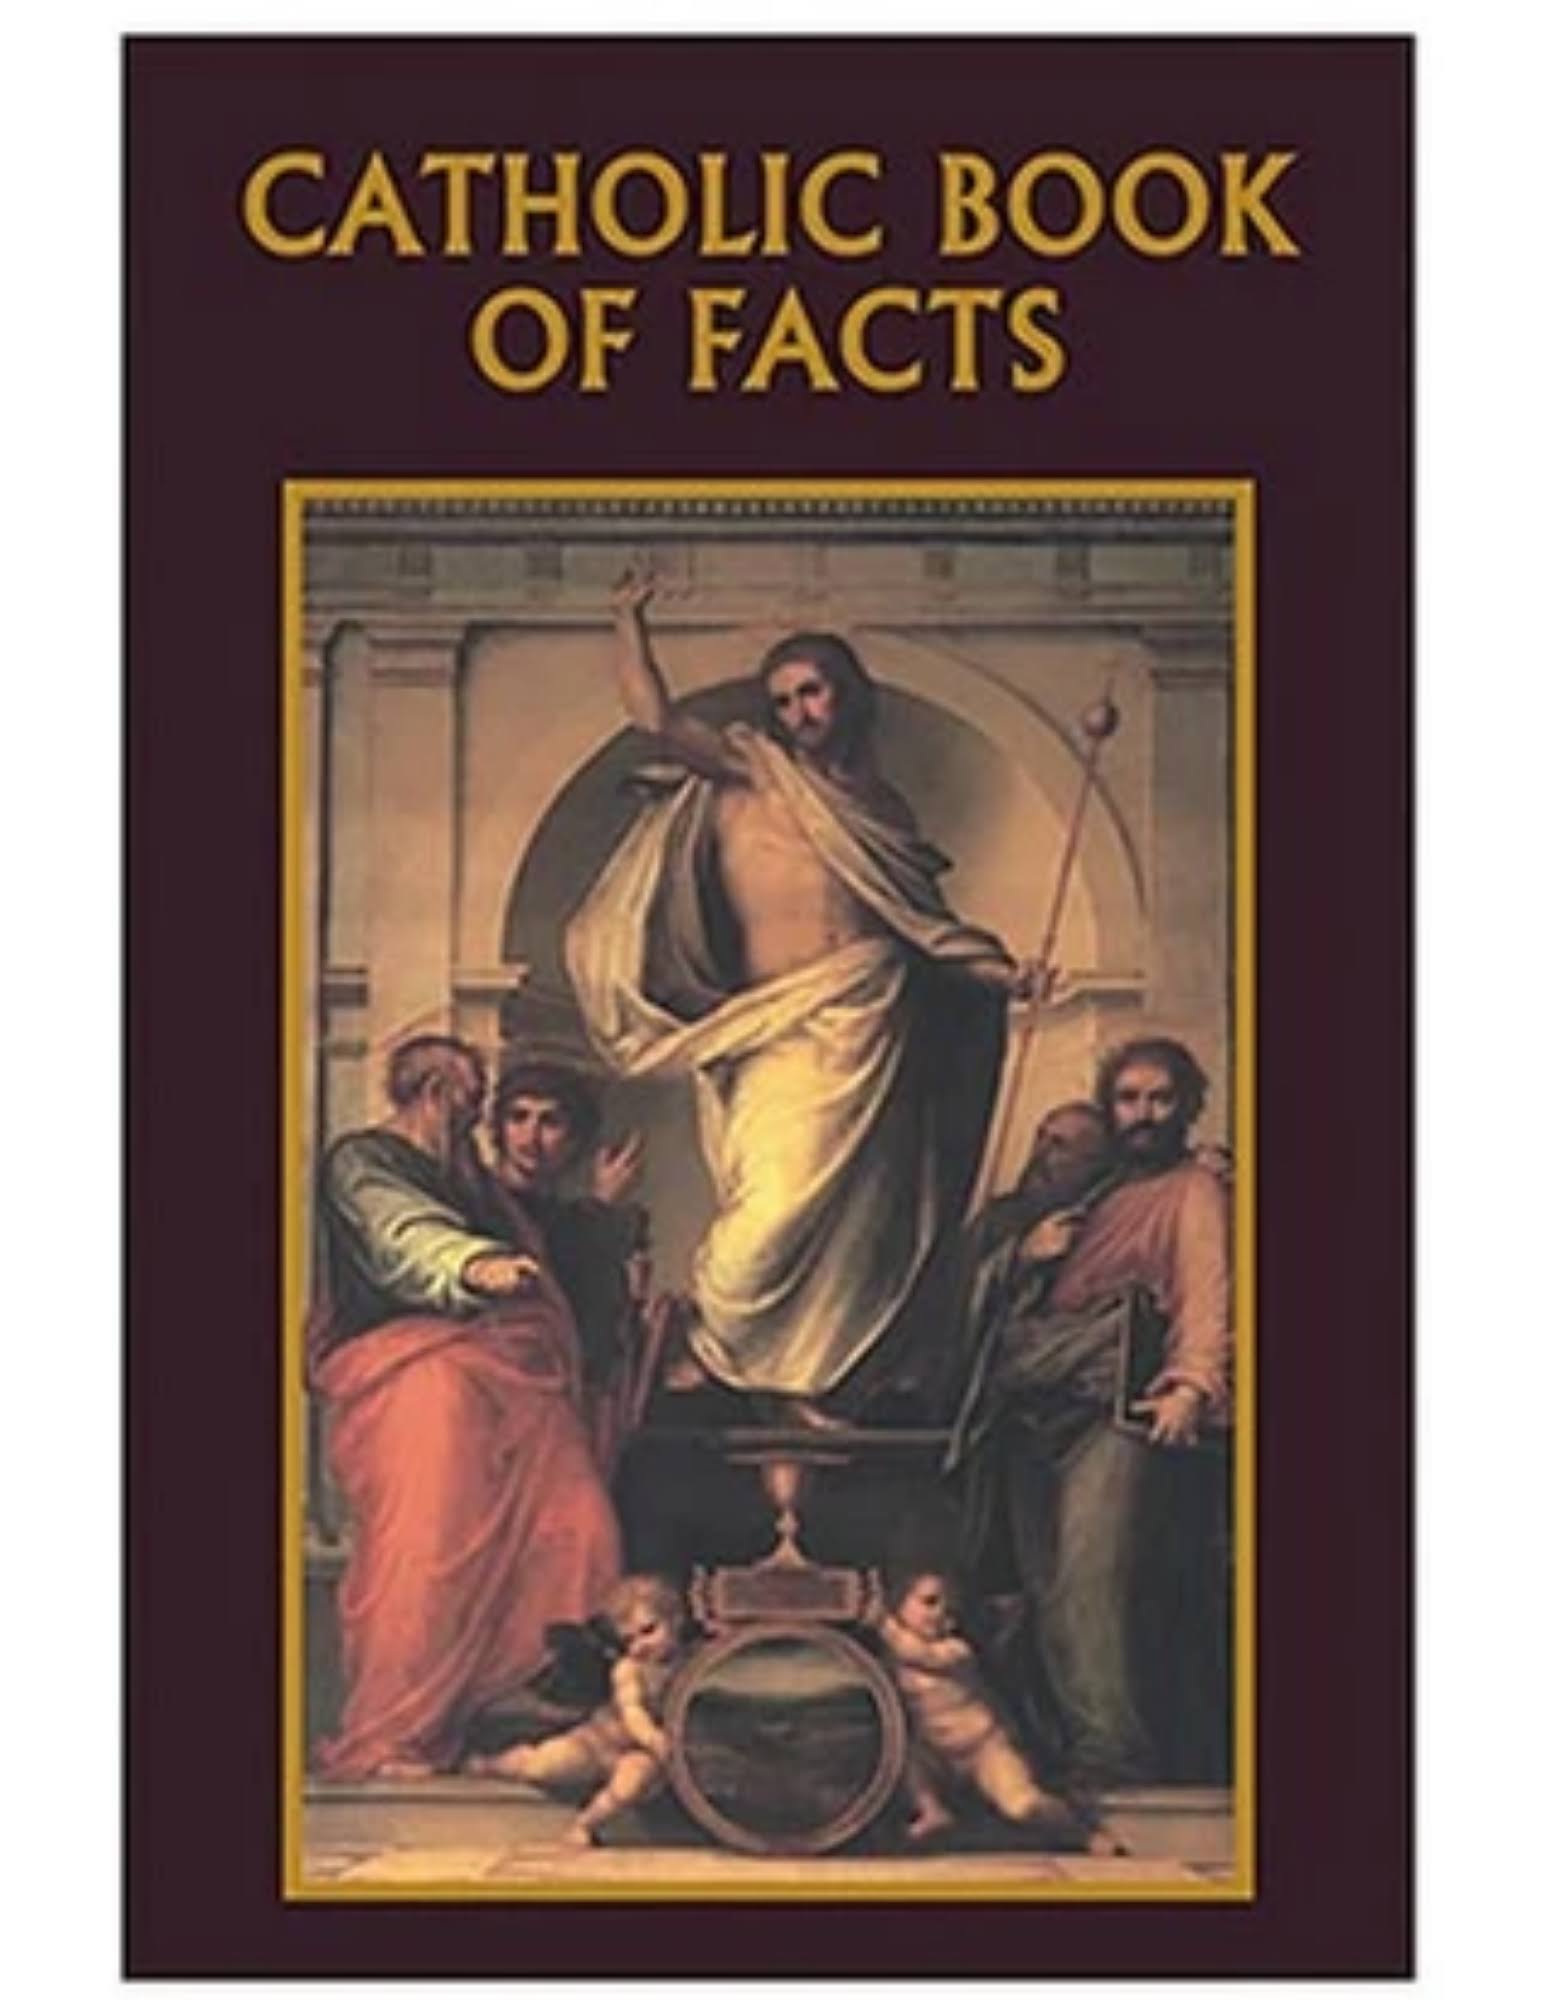 Christian Brands Ms003 Aquinas Press Catholic Book of Facts